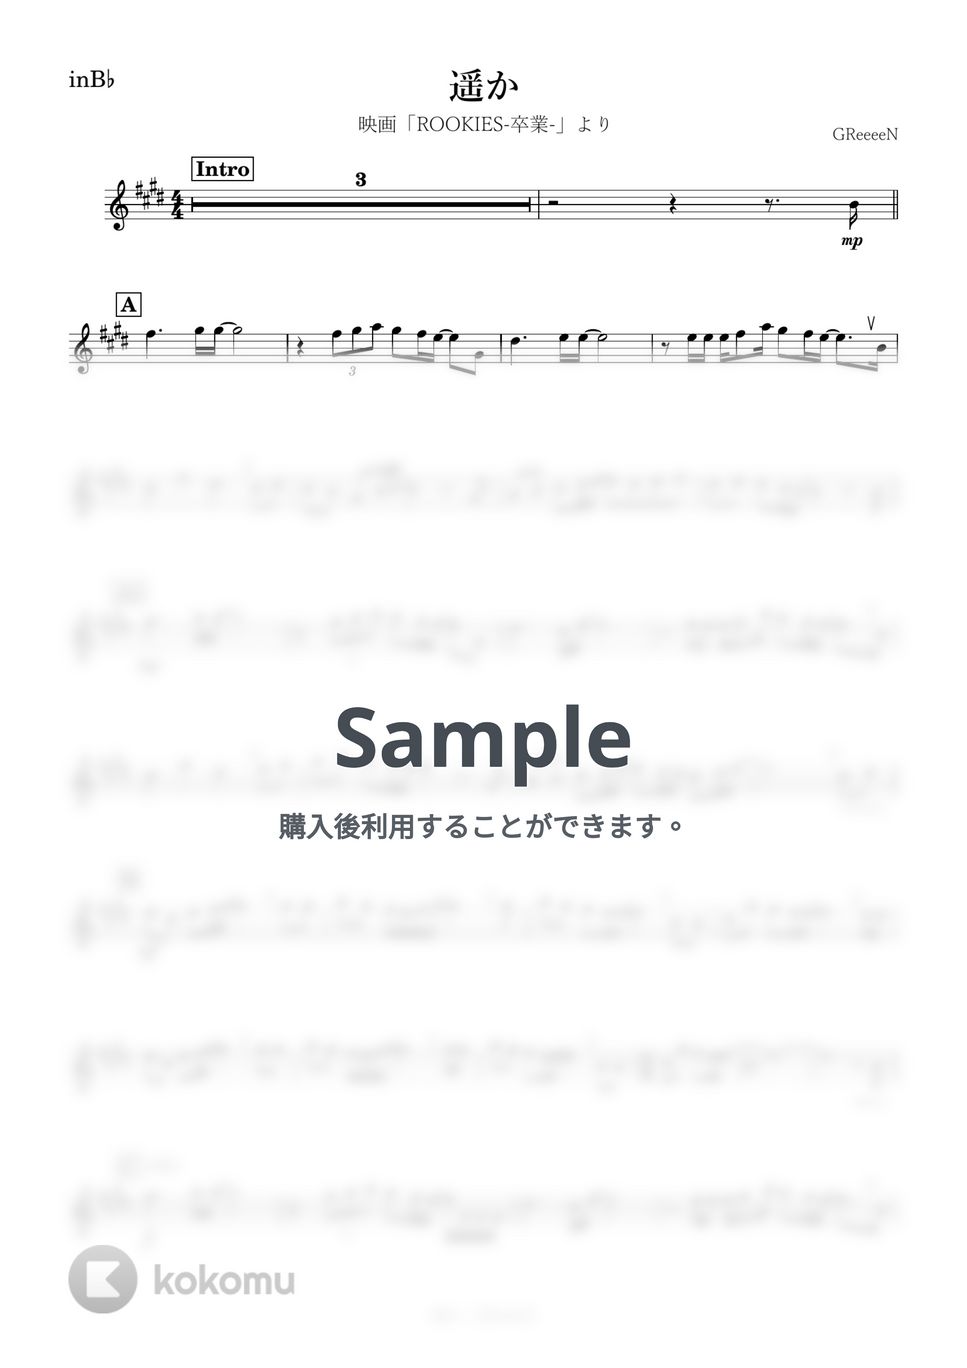 GReeeeN - 遥か (B♭) by kanamusic